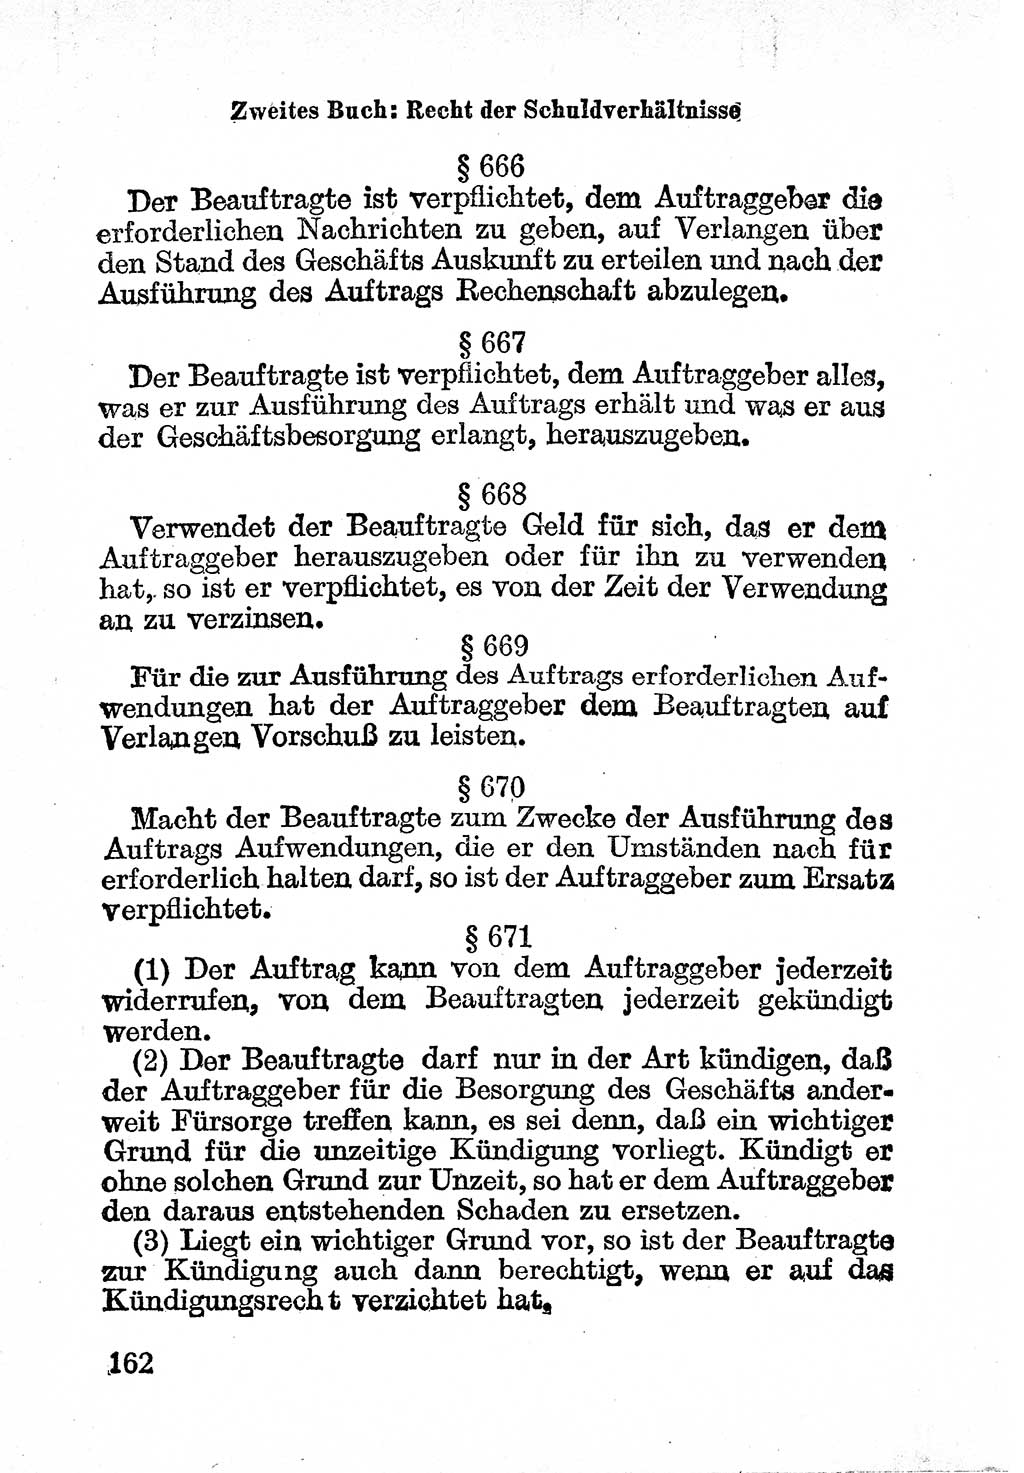 Bürgerliches Gesetzbuch (BGB) nebst wichtigen Nebengesetzen [Deutsche Demokratische Republik (DDR)] 1956, Seite 162 (BGB Nebenges. DDR 1956, S. 162)